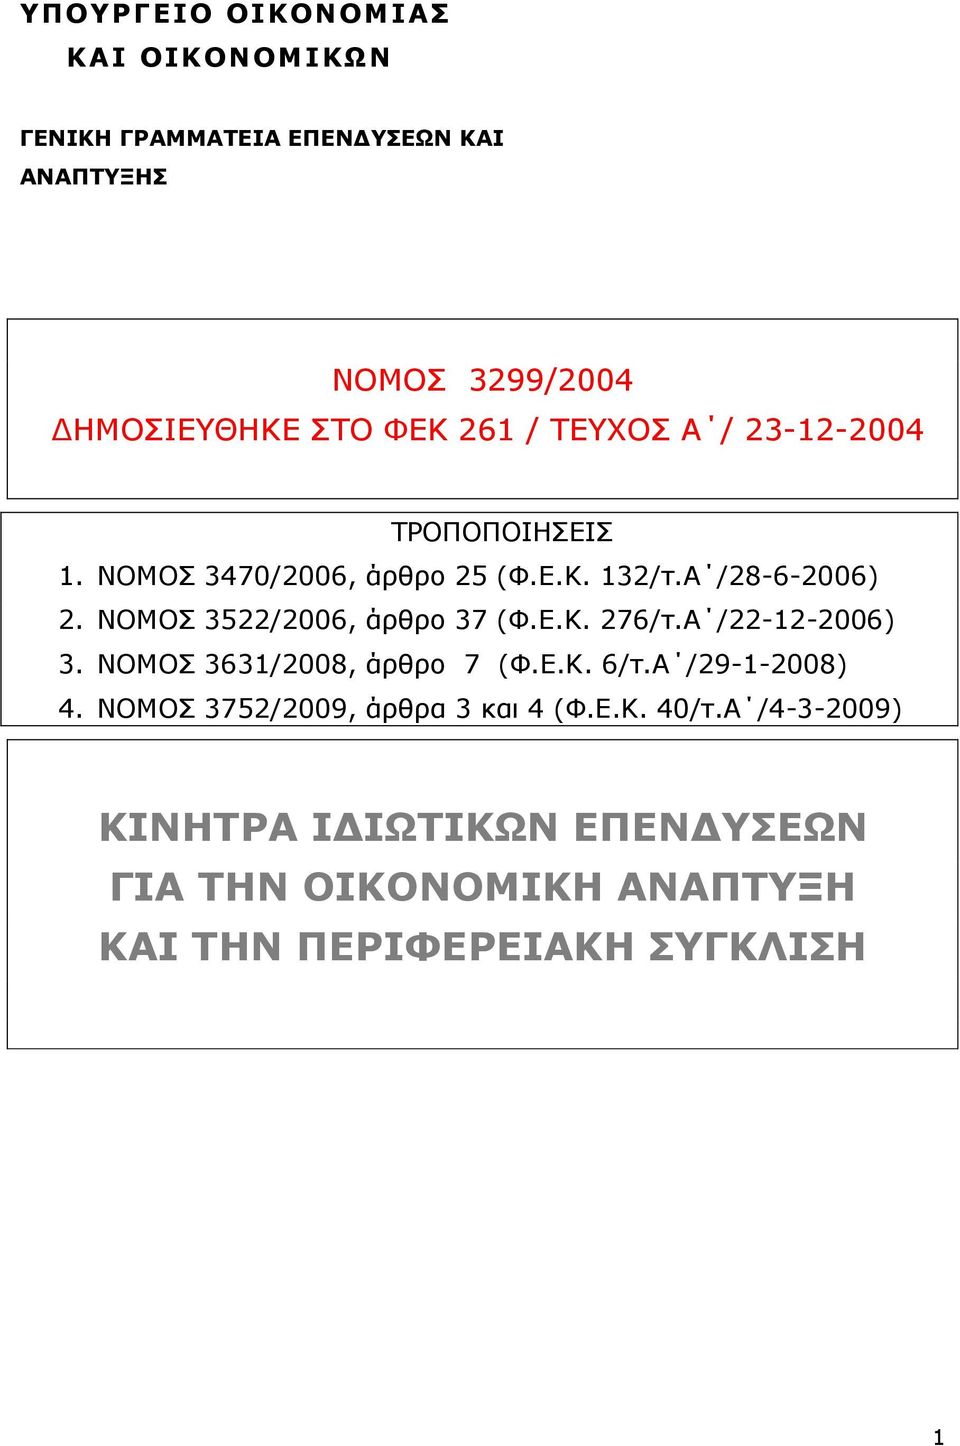 ΝΟΜΟΣ 3522/2006, άρθρο 37 (Φ.Ε.Κ. 276/τ.Α /22-12-2006) 3. ΝΟΜΟΣ 3631/2008, άρθρο 7 (Φ.Ε.Κ. 6/τ.Α /29-1-2008) 4.